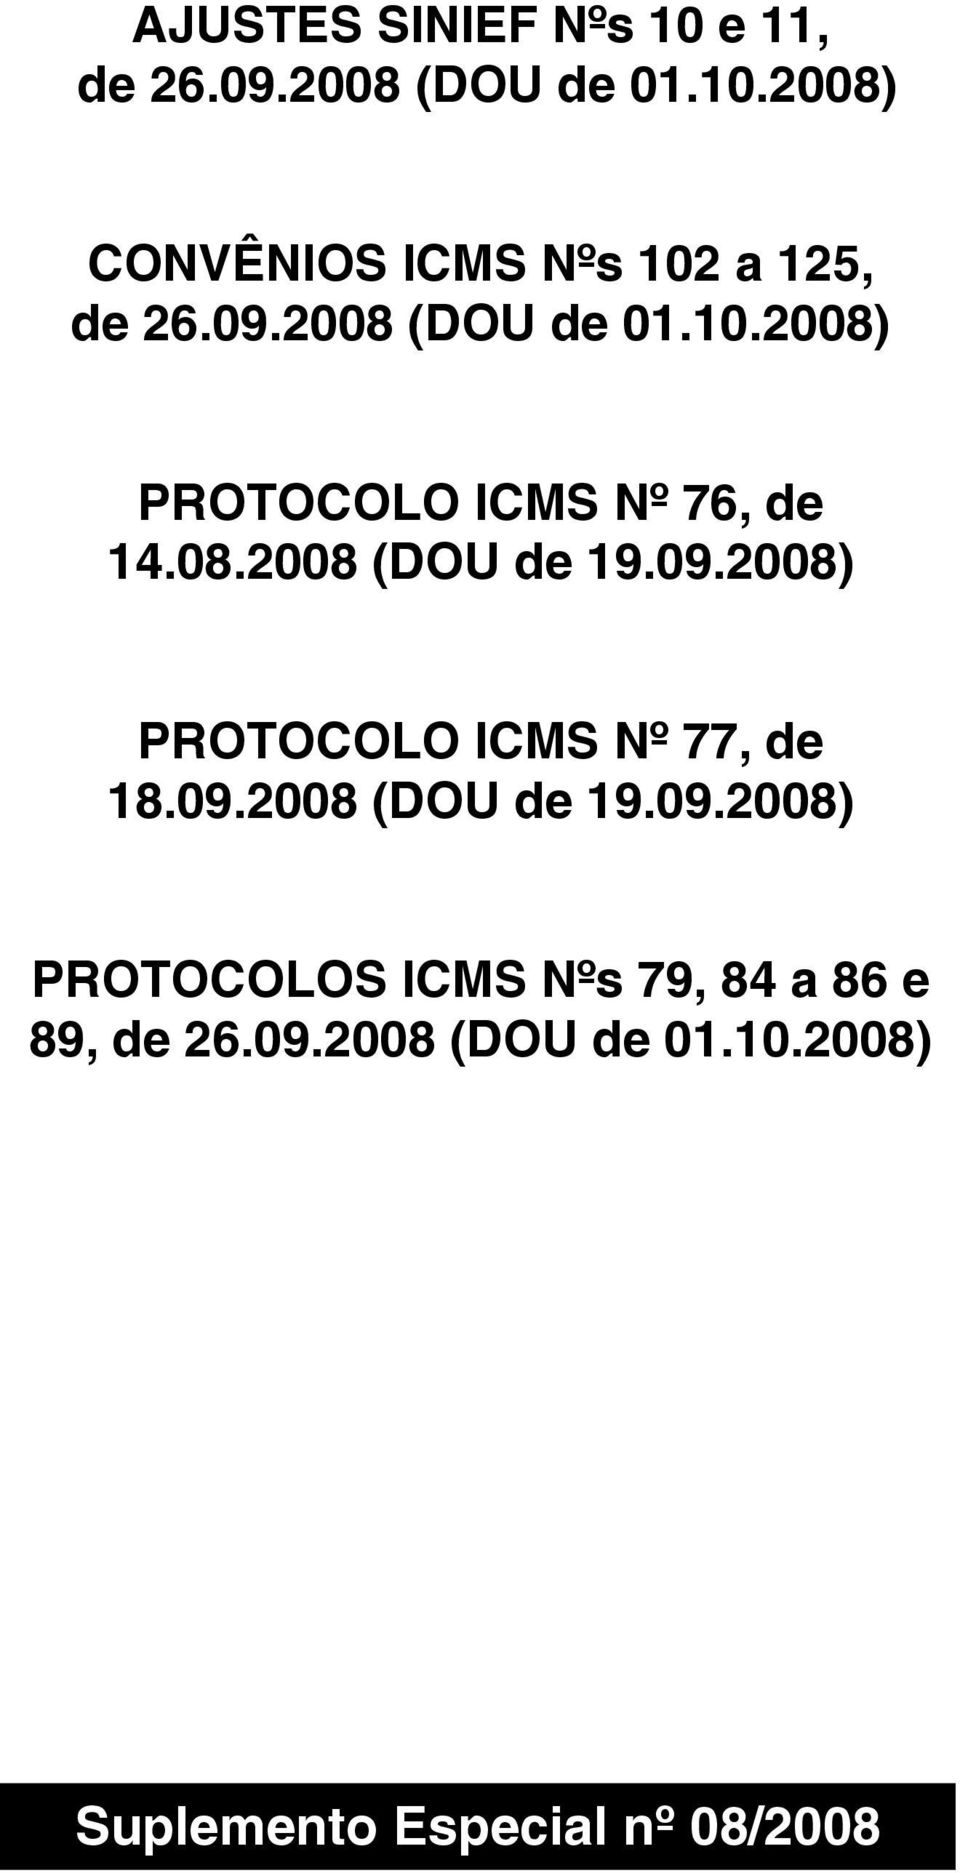 09.2008 (DOU de 19.09.2008) PROTOCOLOS ICMS Nºs 79, 84 a 86 e 89, de 26.09.2008 (DOU de 01.